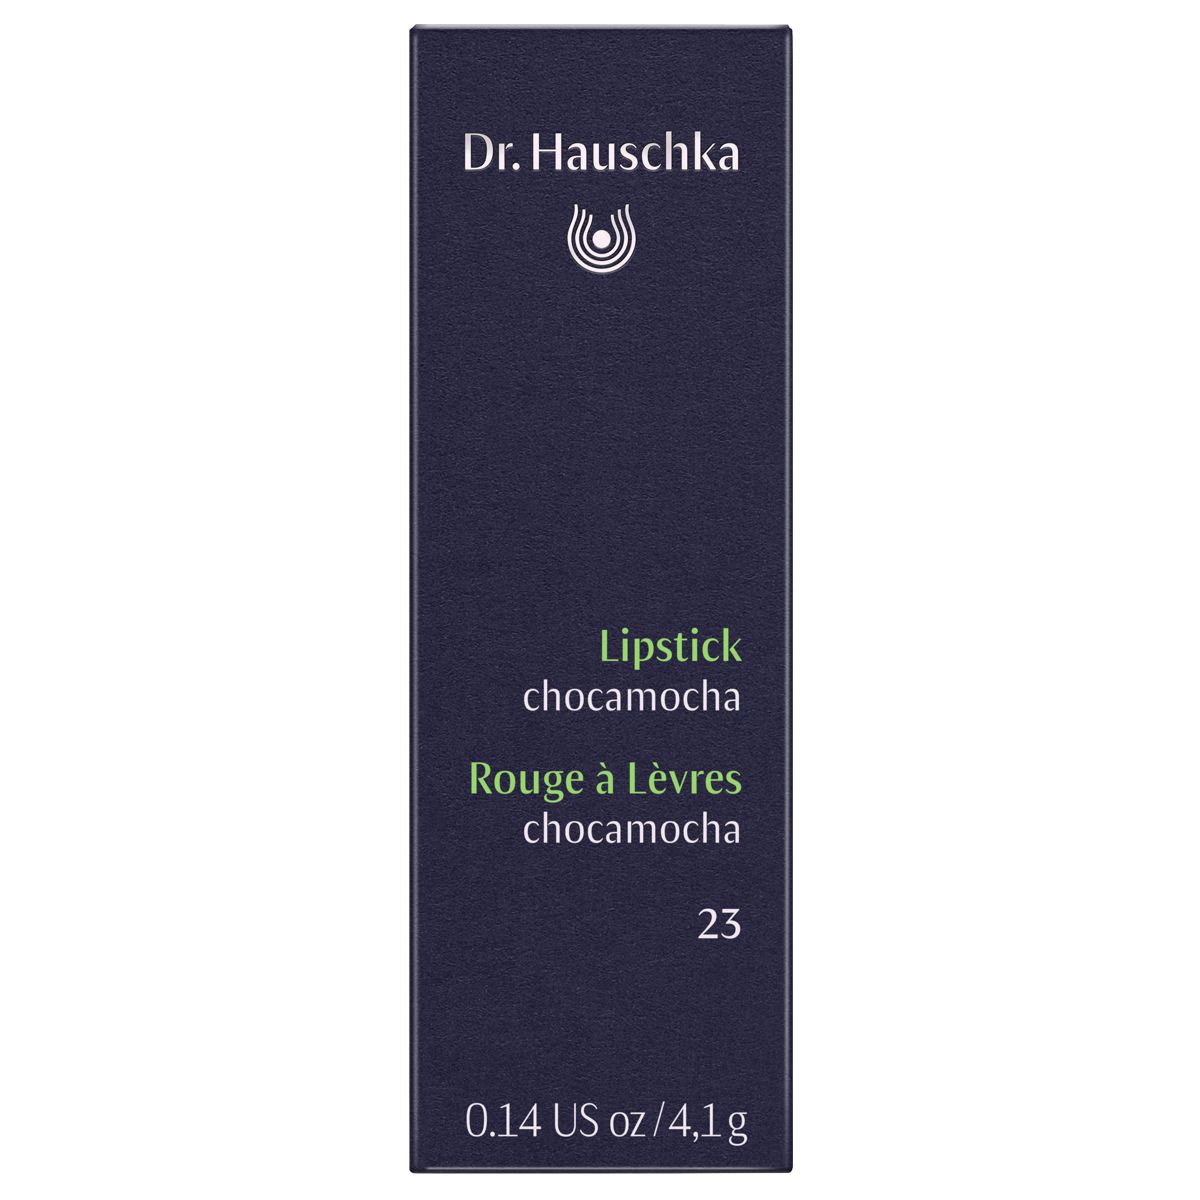 Dr_Hauschka_Lipstick_23_chocamocha_online_kaufen